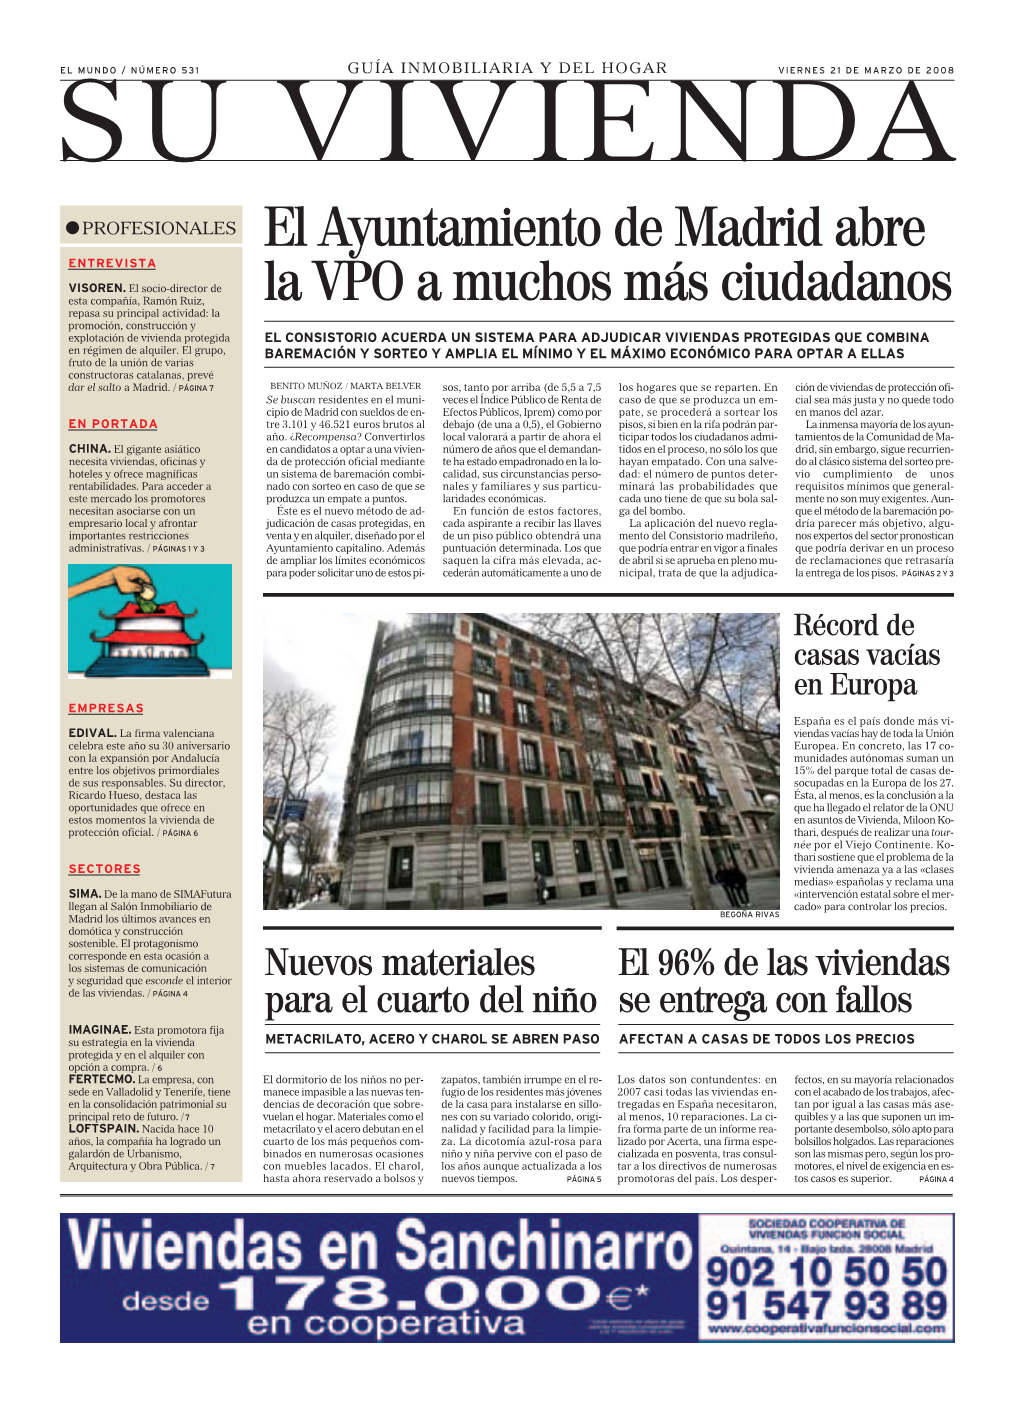 El Ayuntamiento De Madrid Abre La VPO a Muchos Más Ciudadanos